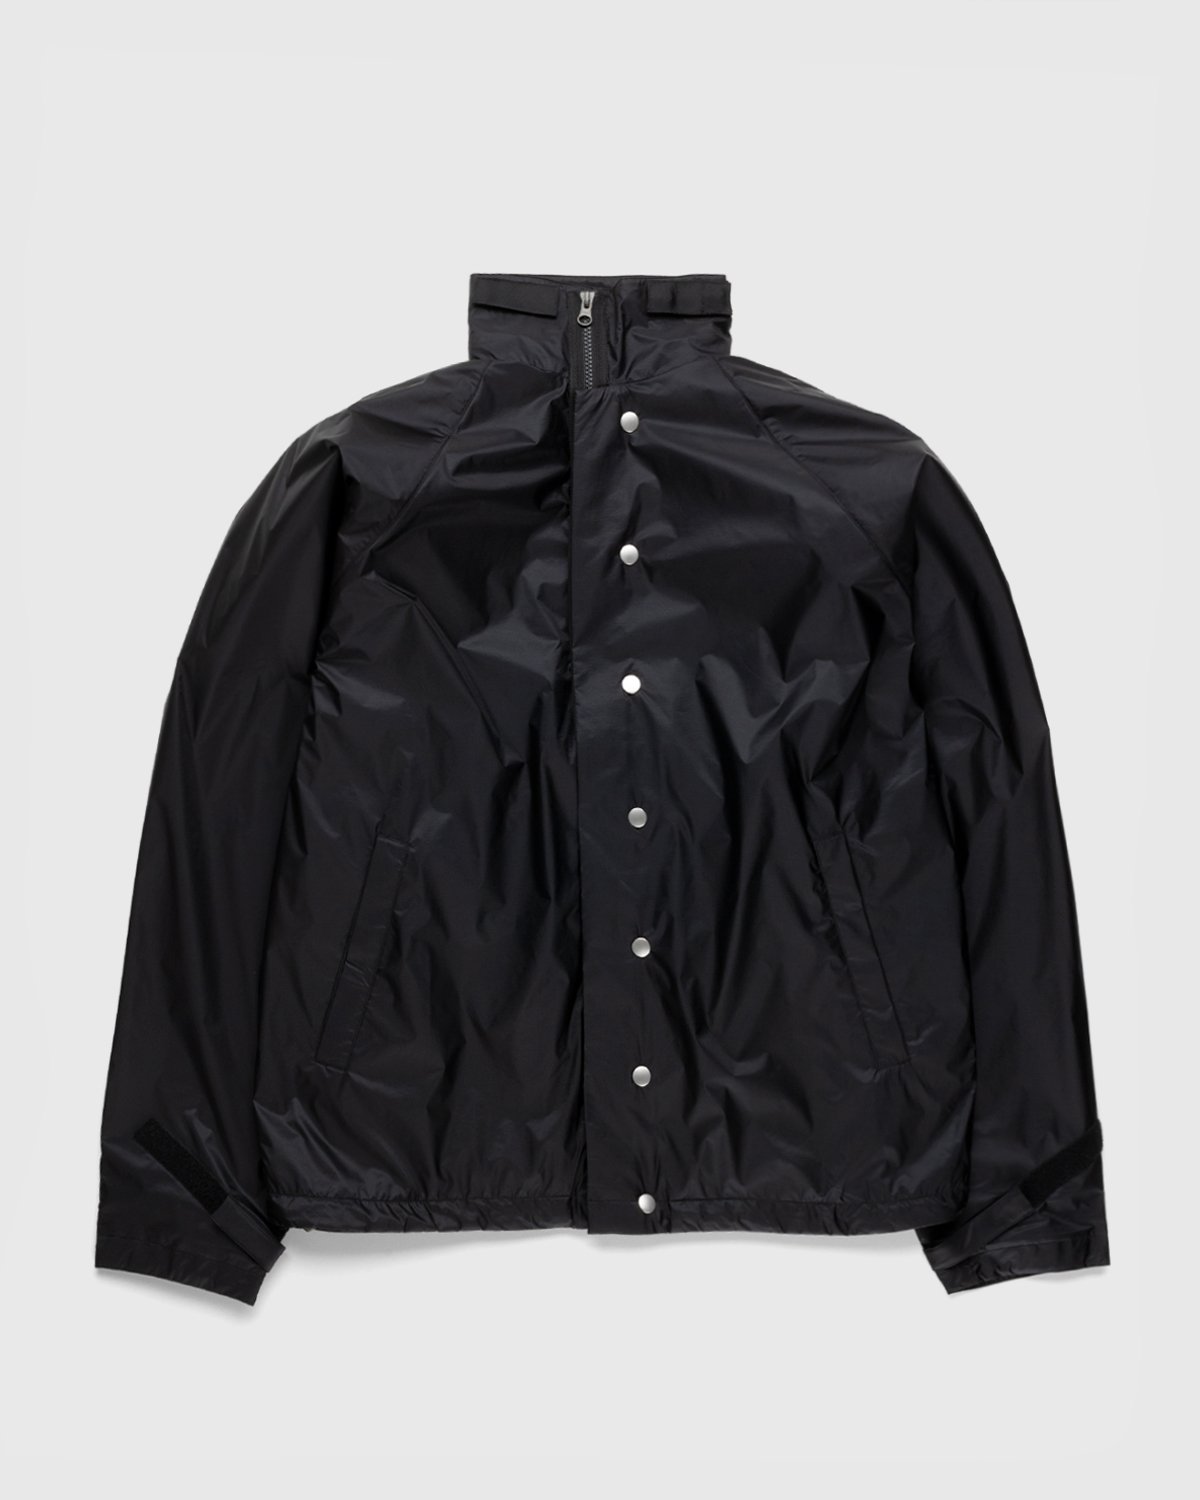 ACRONYM - J95-WS Jacket Black - Clothing - Black - Image 1